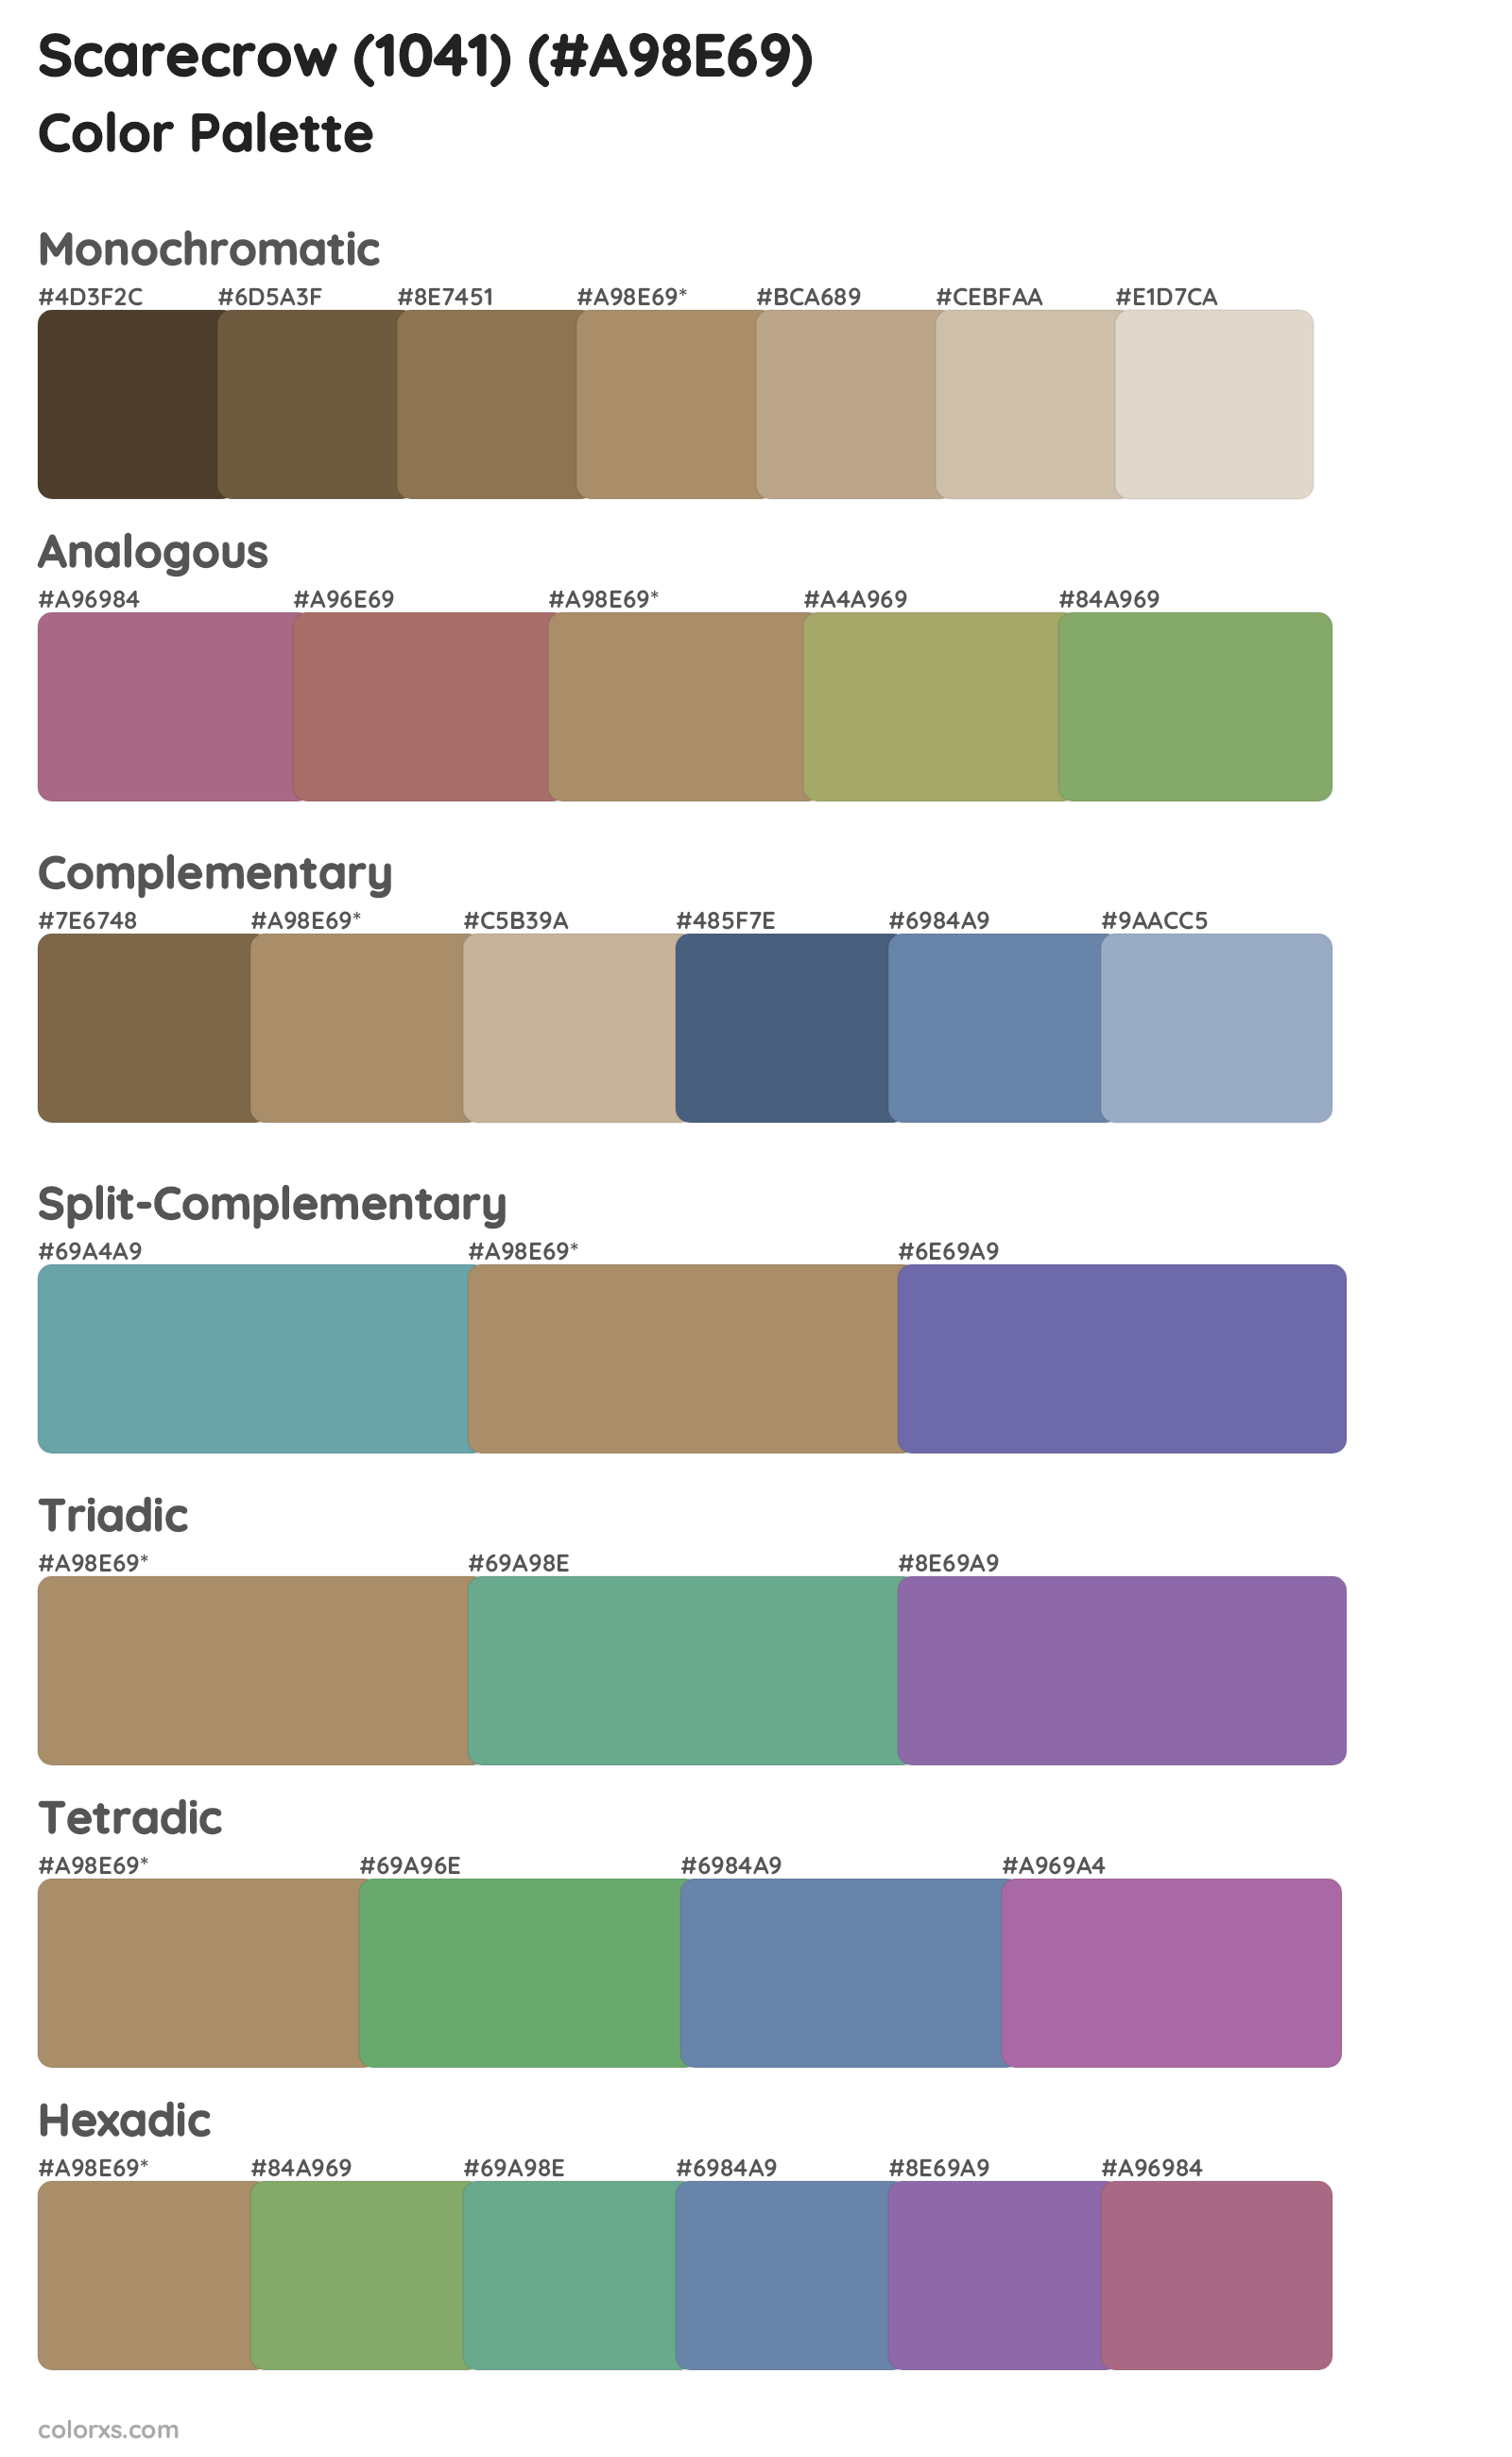 Scarecrow (1041) Color Scheme Palettes